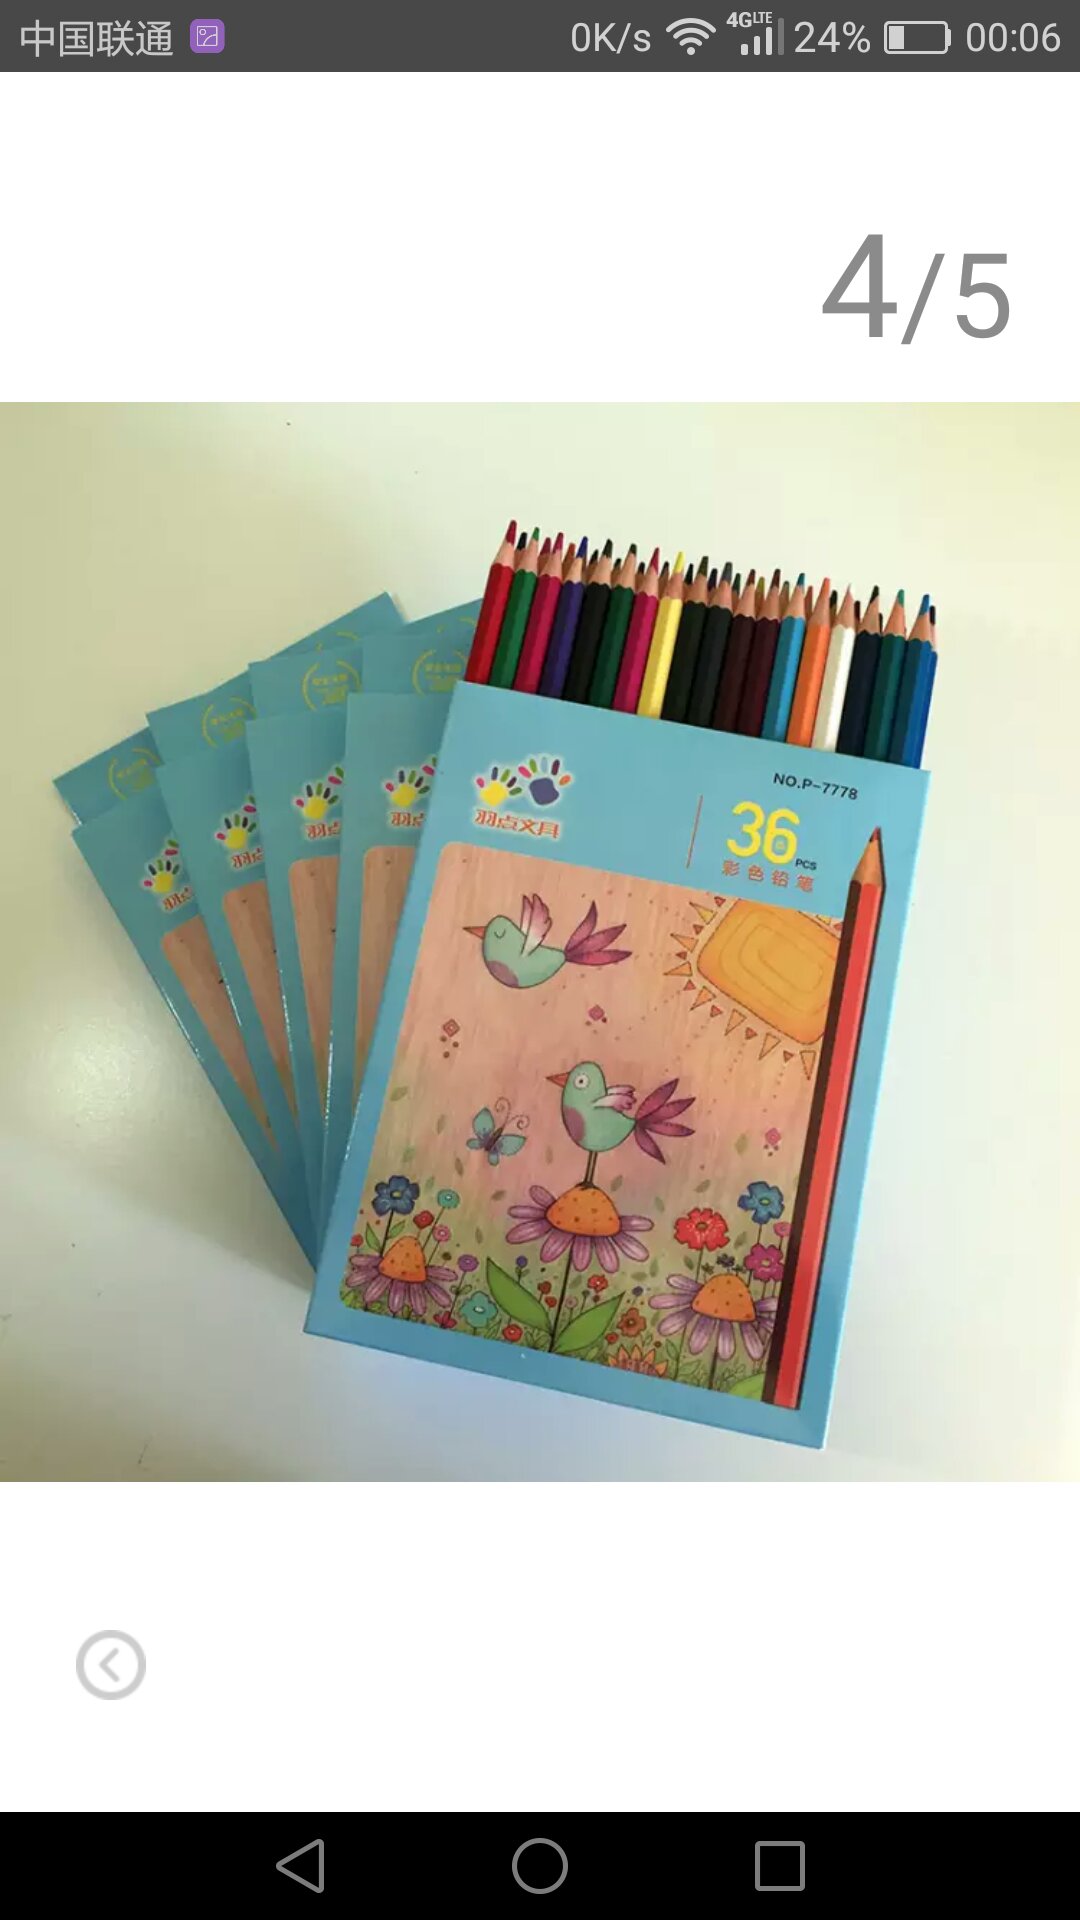 36种不同颜色的铅笔，给小孩画画涂鸦什么的非常棒